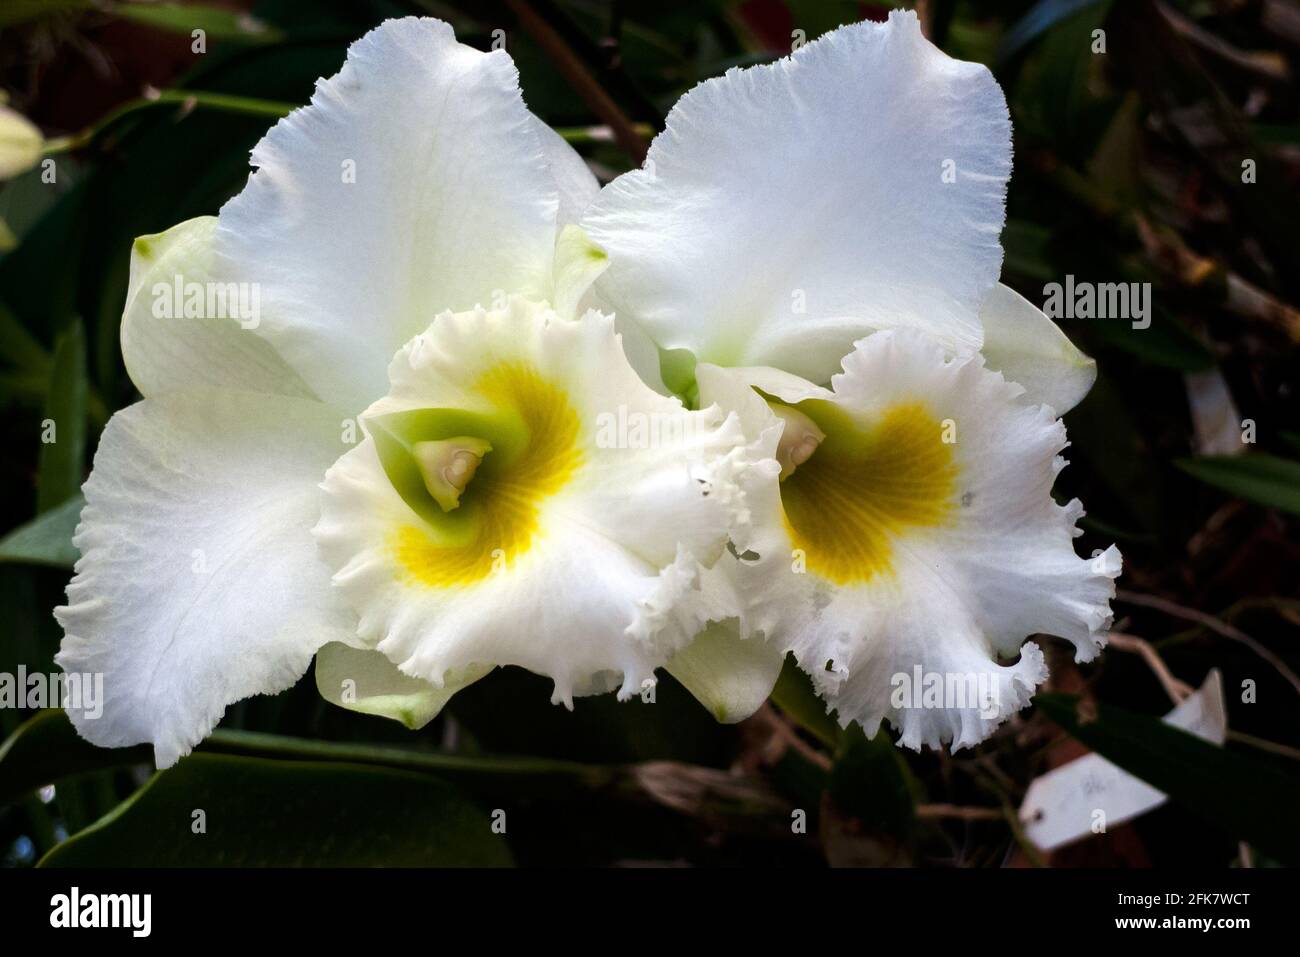 Kandy, Peradeniya botanical garden, Sri Lanka: white orchid Stock Photo